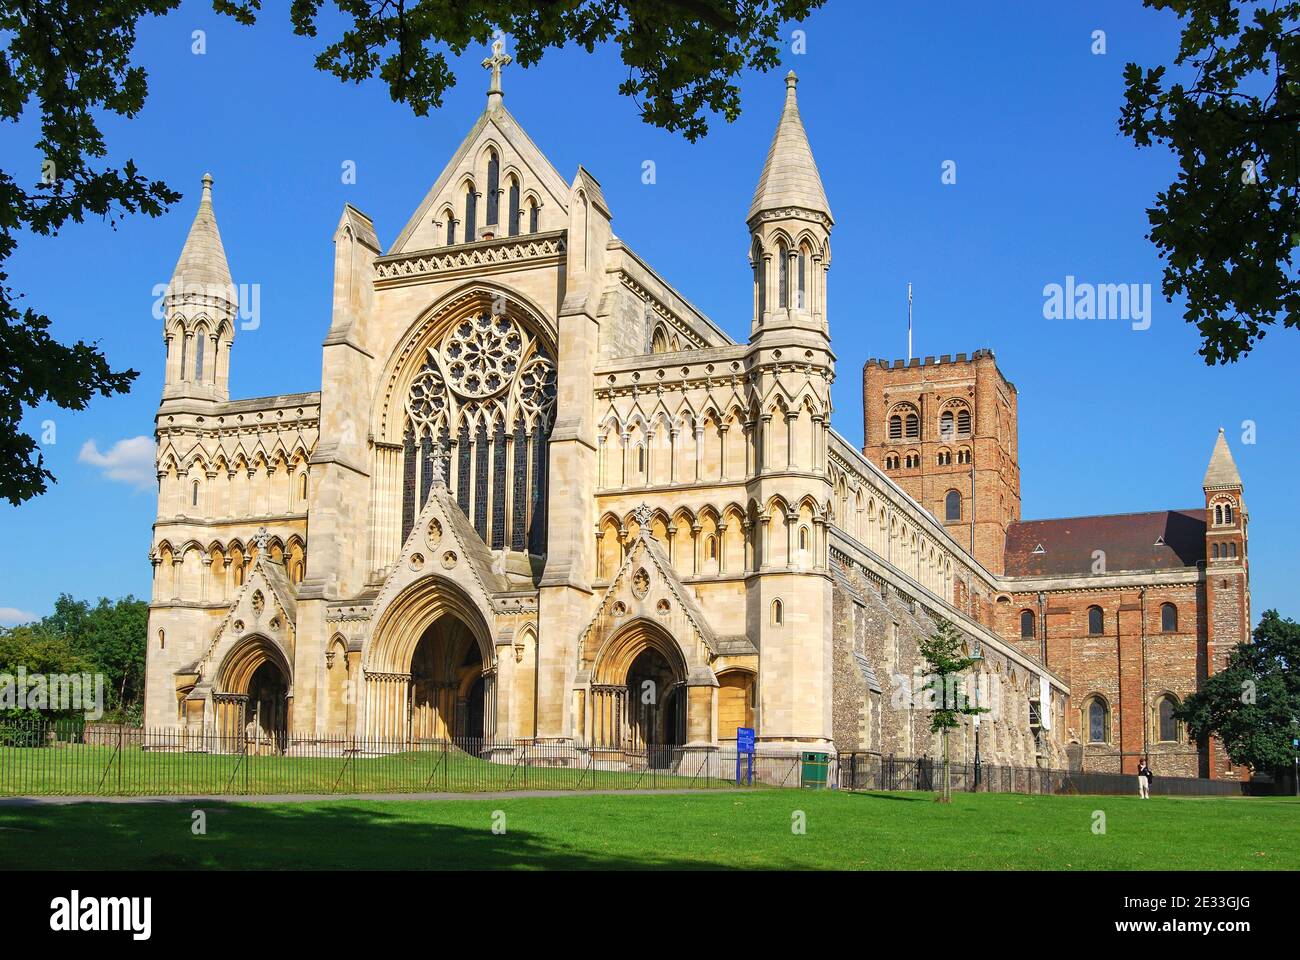 West End, cathédrale normande et clocher de l'église abbatiale, St Albans, Hertfordshire, Angleterre, Royaume-Uni Banque D'Images